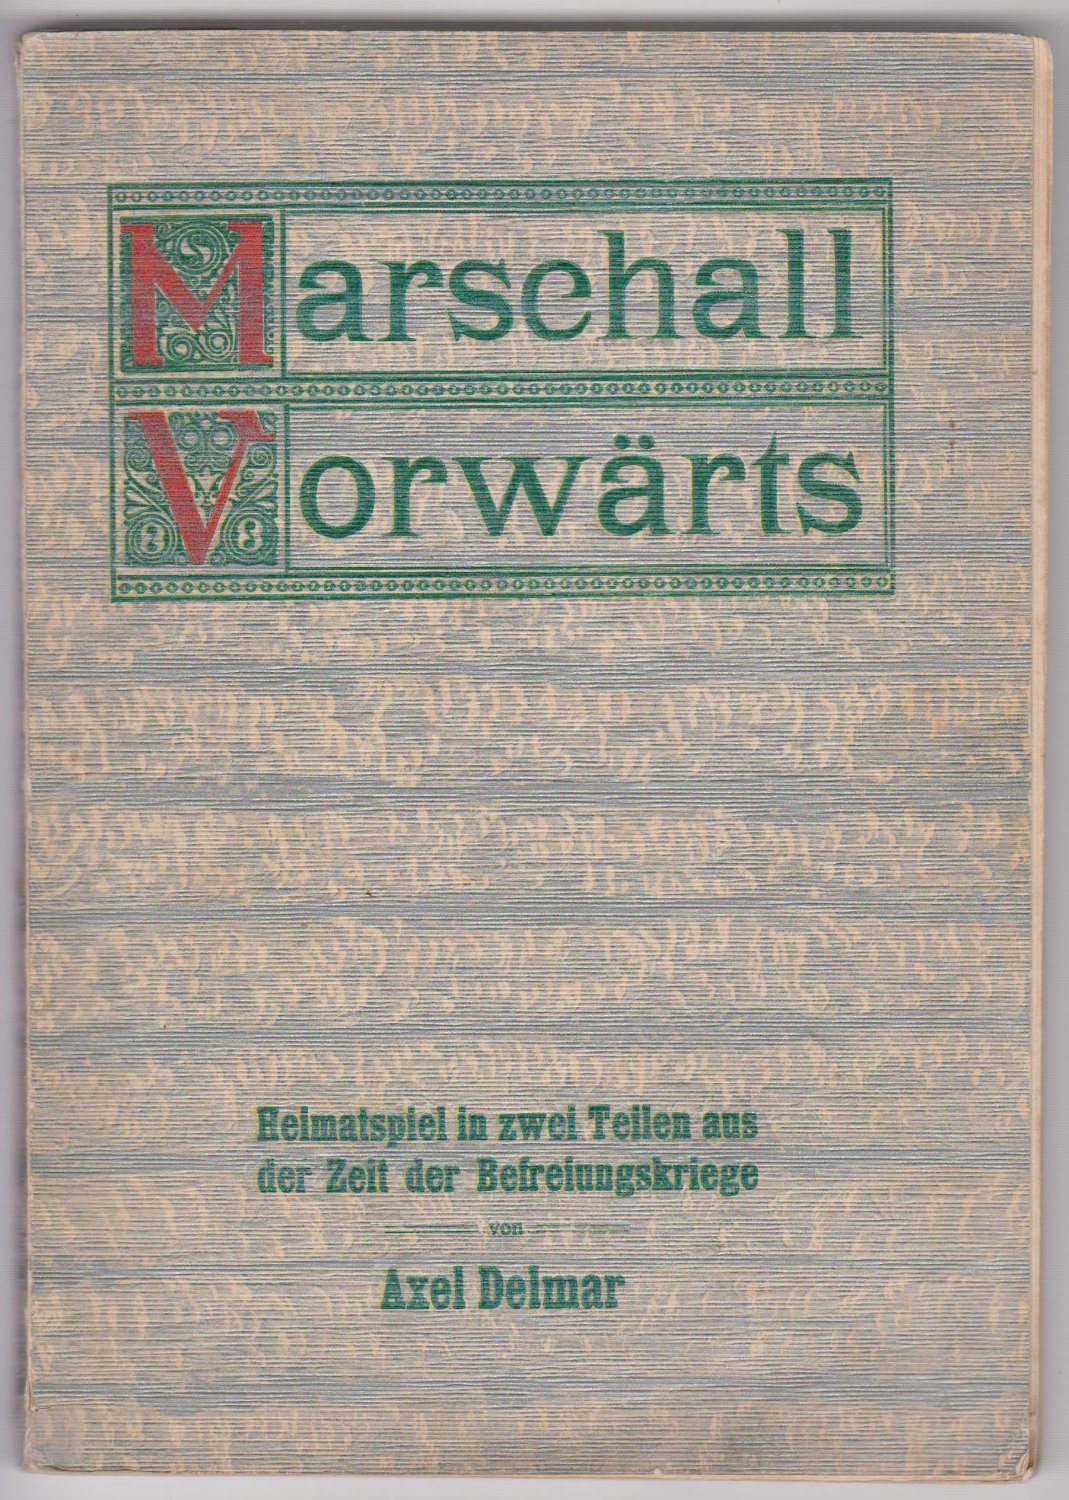 DELMAR, Axel:  Marschall Vorwärts. Heimatspiel in zwei Teilen aus der Zeit der Befreiungskriege. 